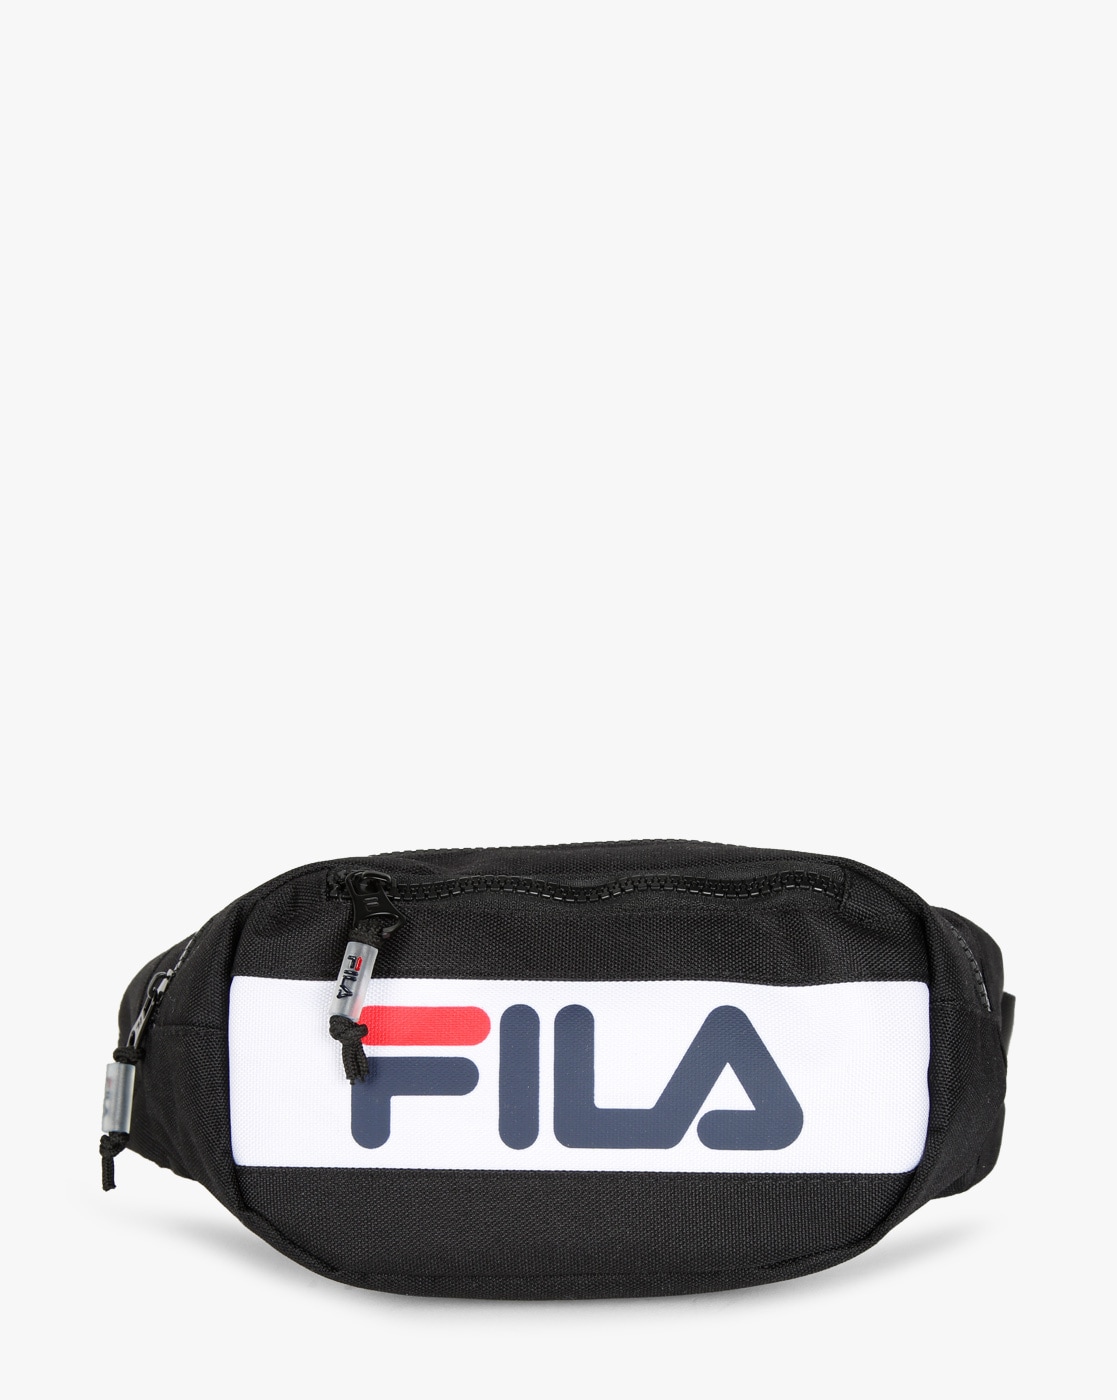 Buy Fila Bag Online In India  Etsy India